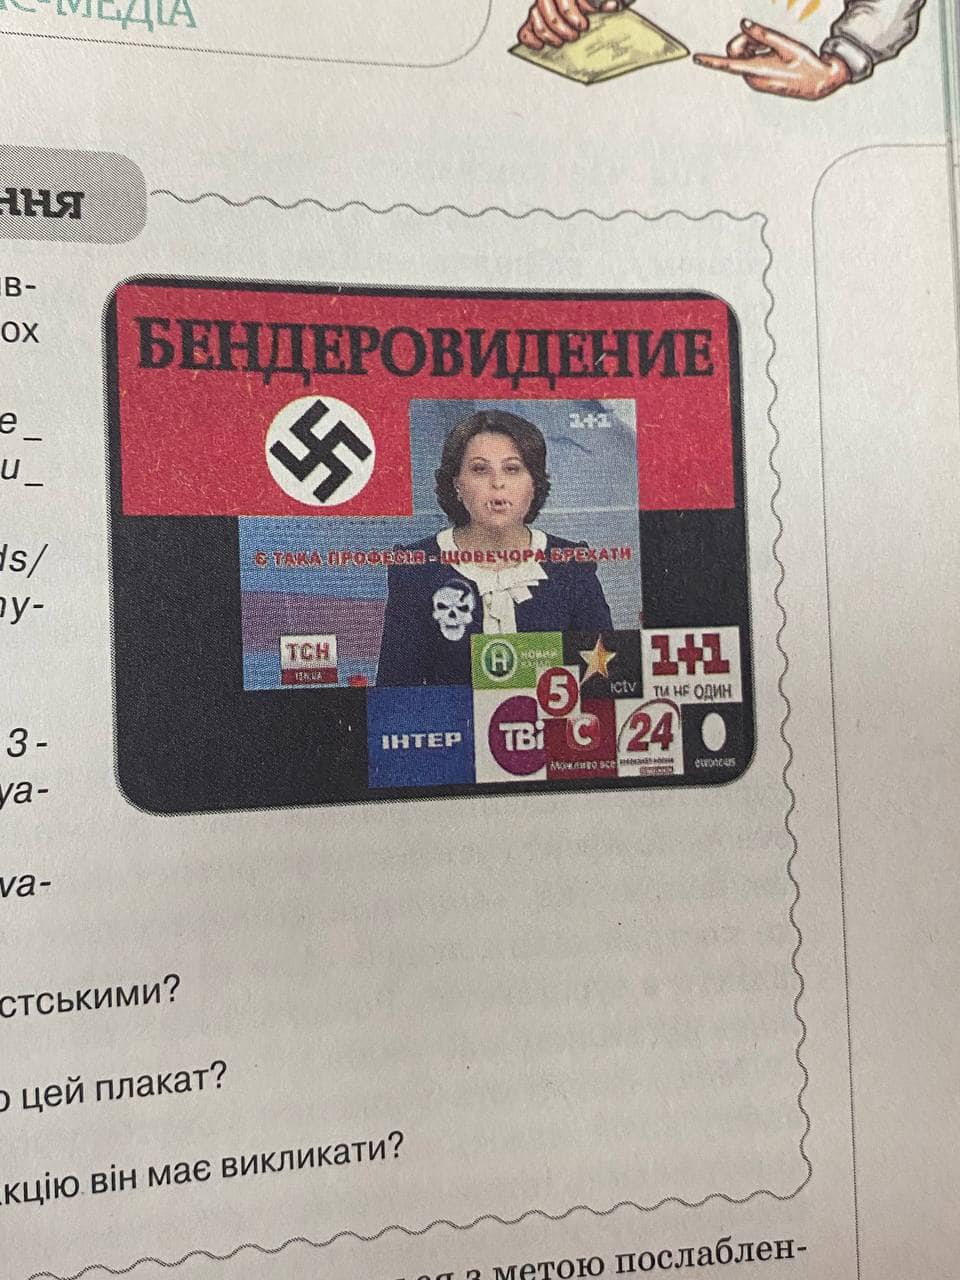 В учебнике для украинских школьников нашли картинку со свастикой (фото)